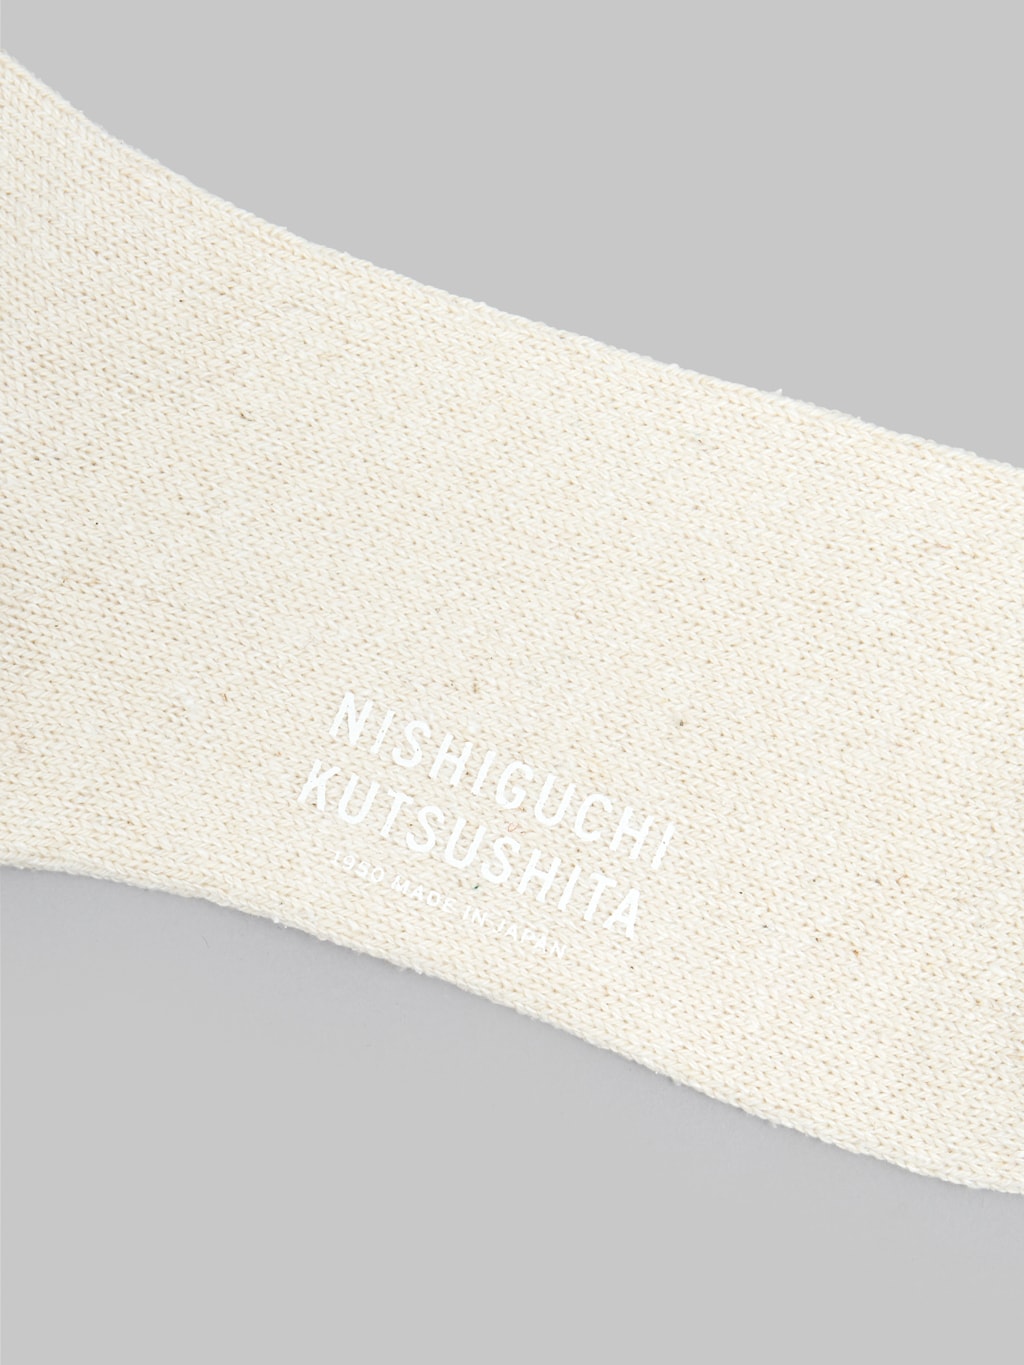 nishiguchi kutsushita silk cotton socks marshmallow cream logo